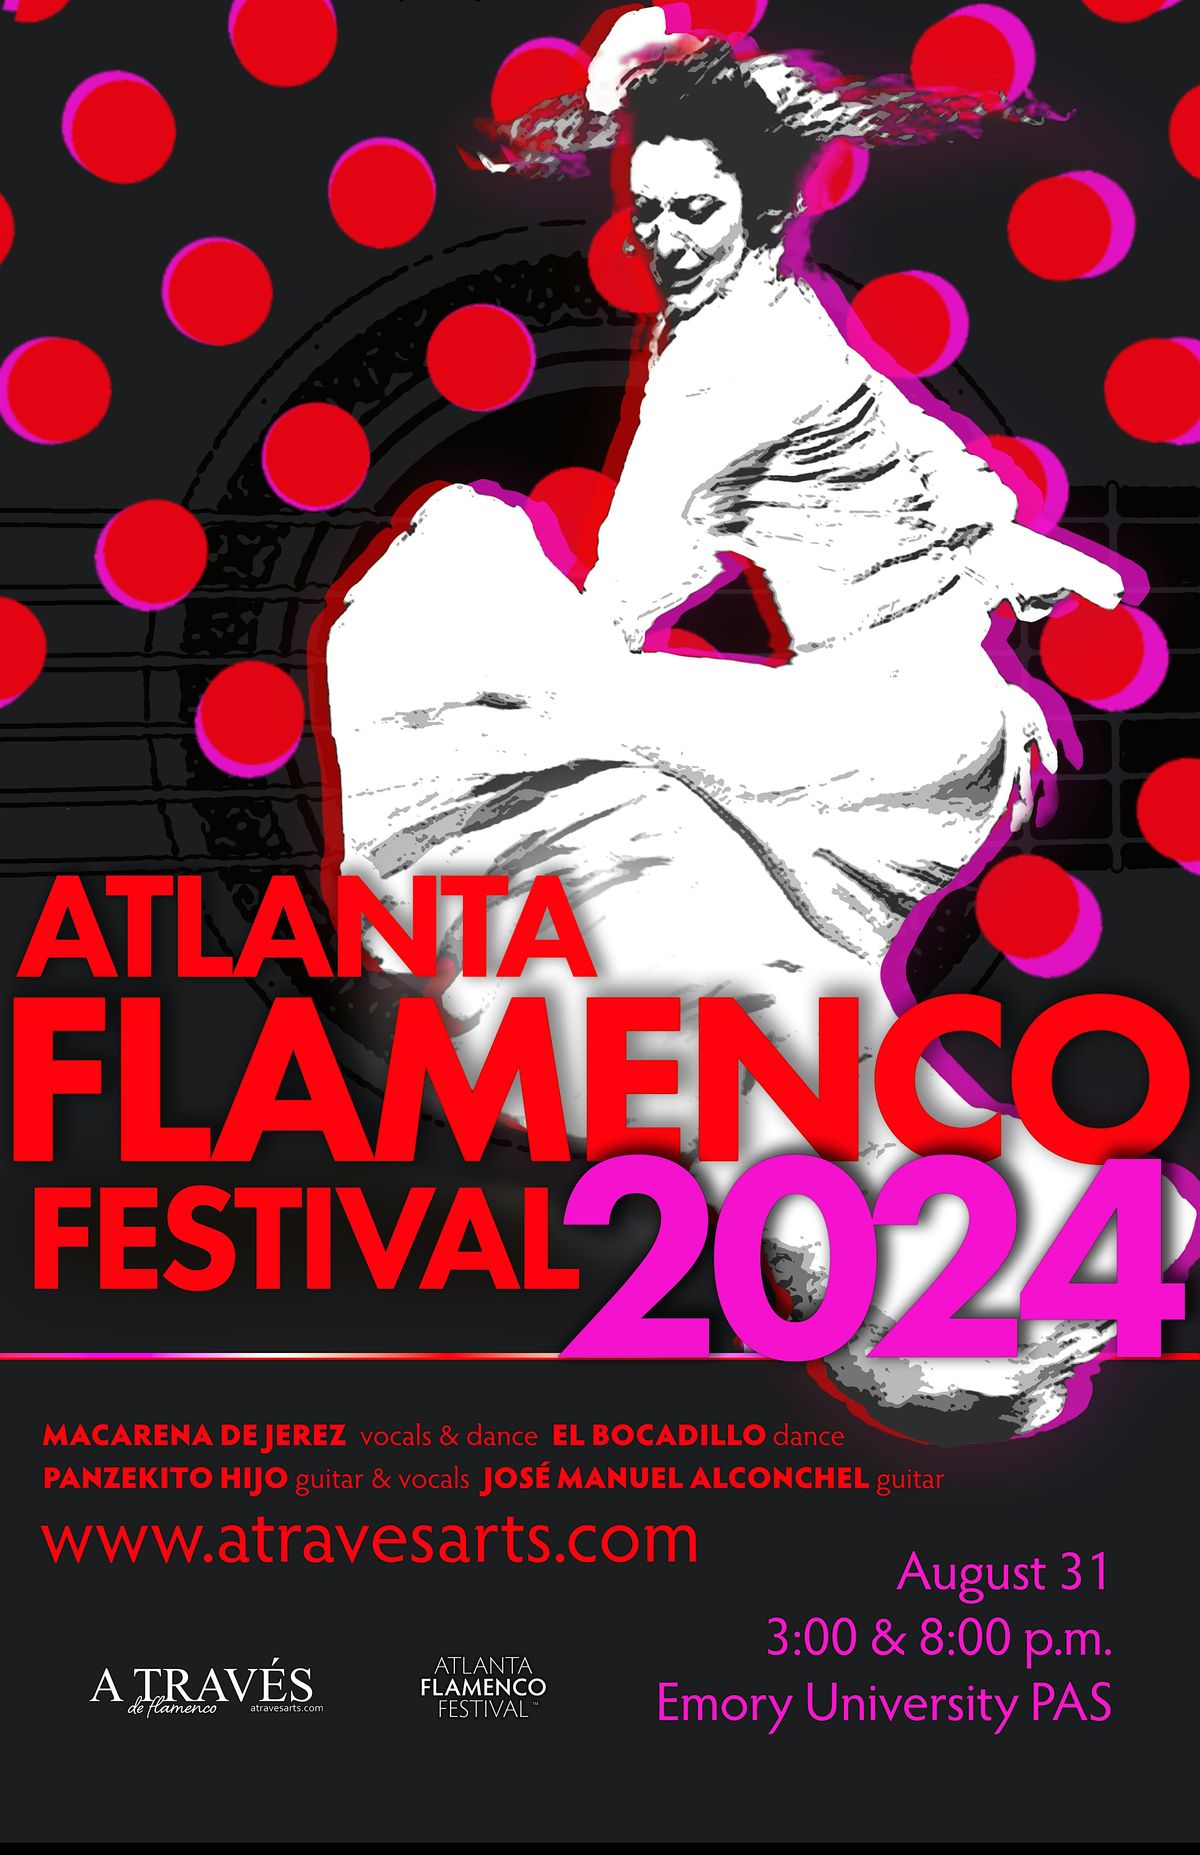 Atlanta Flamenco Festival - 8 PM - PRE-SALE TICKETS